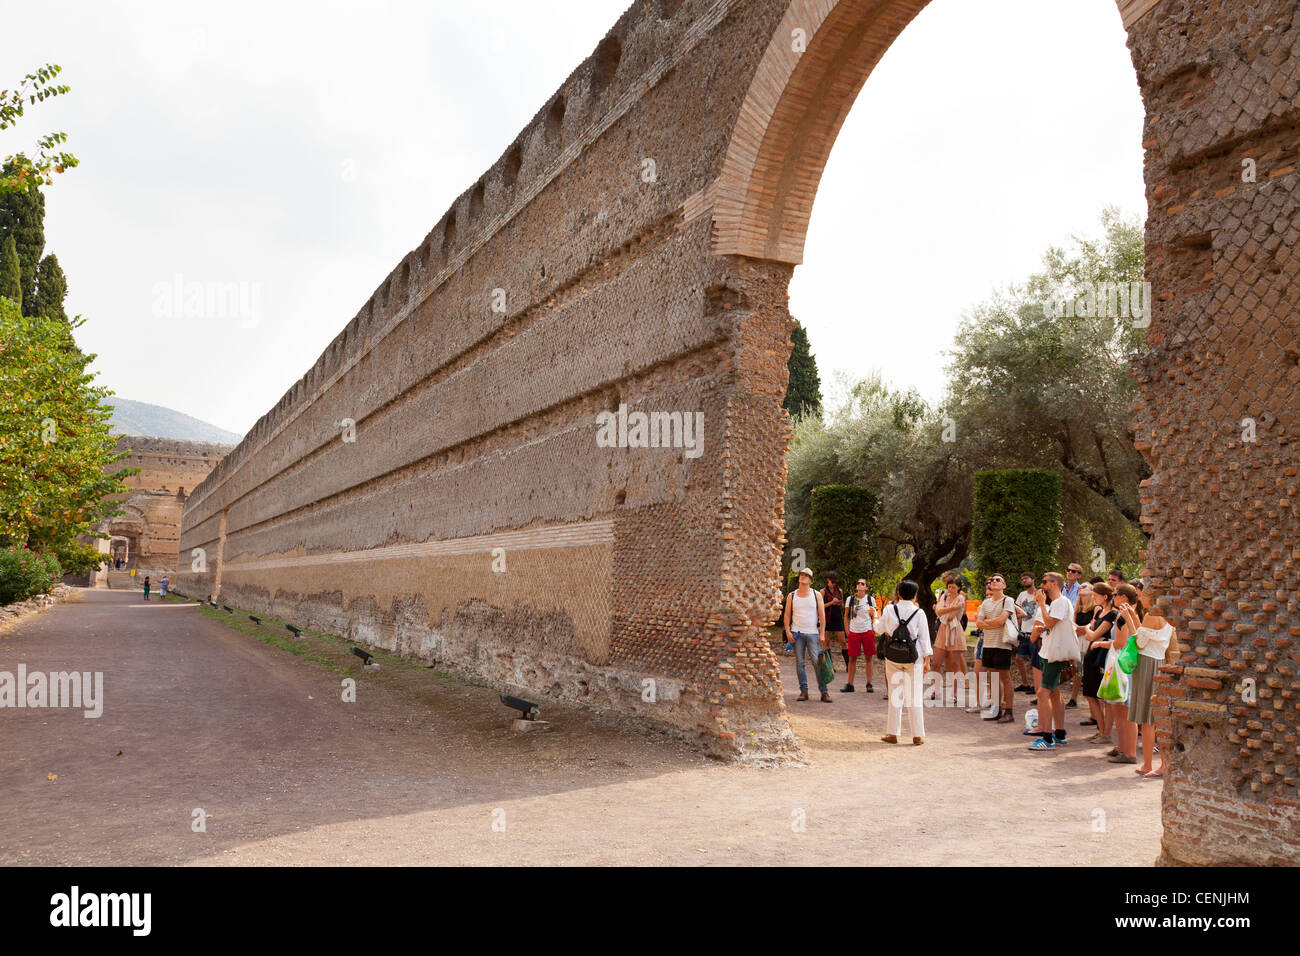 Tourists at the wall of the Hundred Chambers of Hadrian's Villa in Tivoli, Lazio, Italy Stock Photo